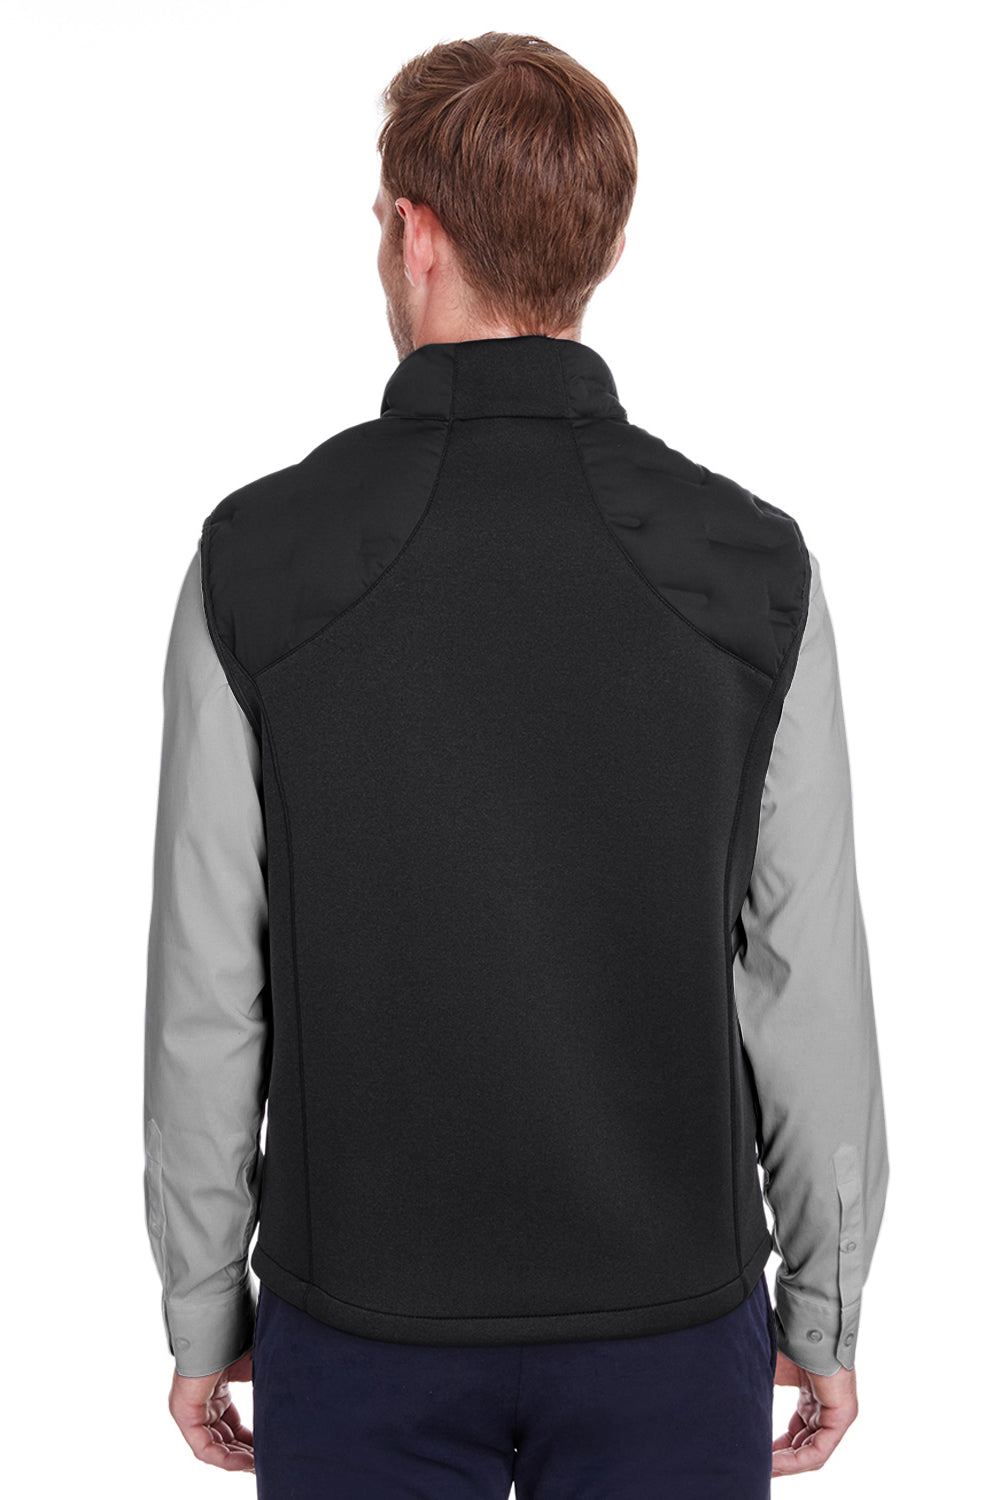 North End NE709 Mens Pioneer Hybrid Waterproof Full Zip Vest Black/Carbon Grey Back